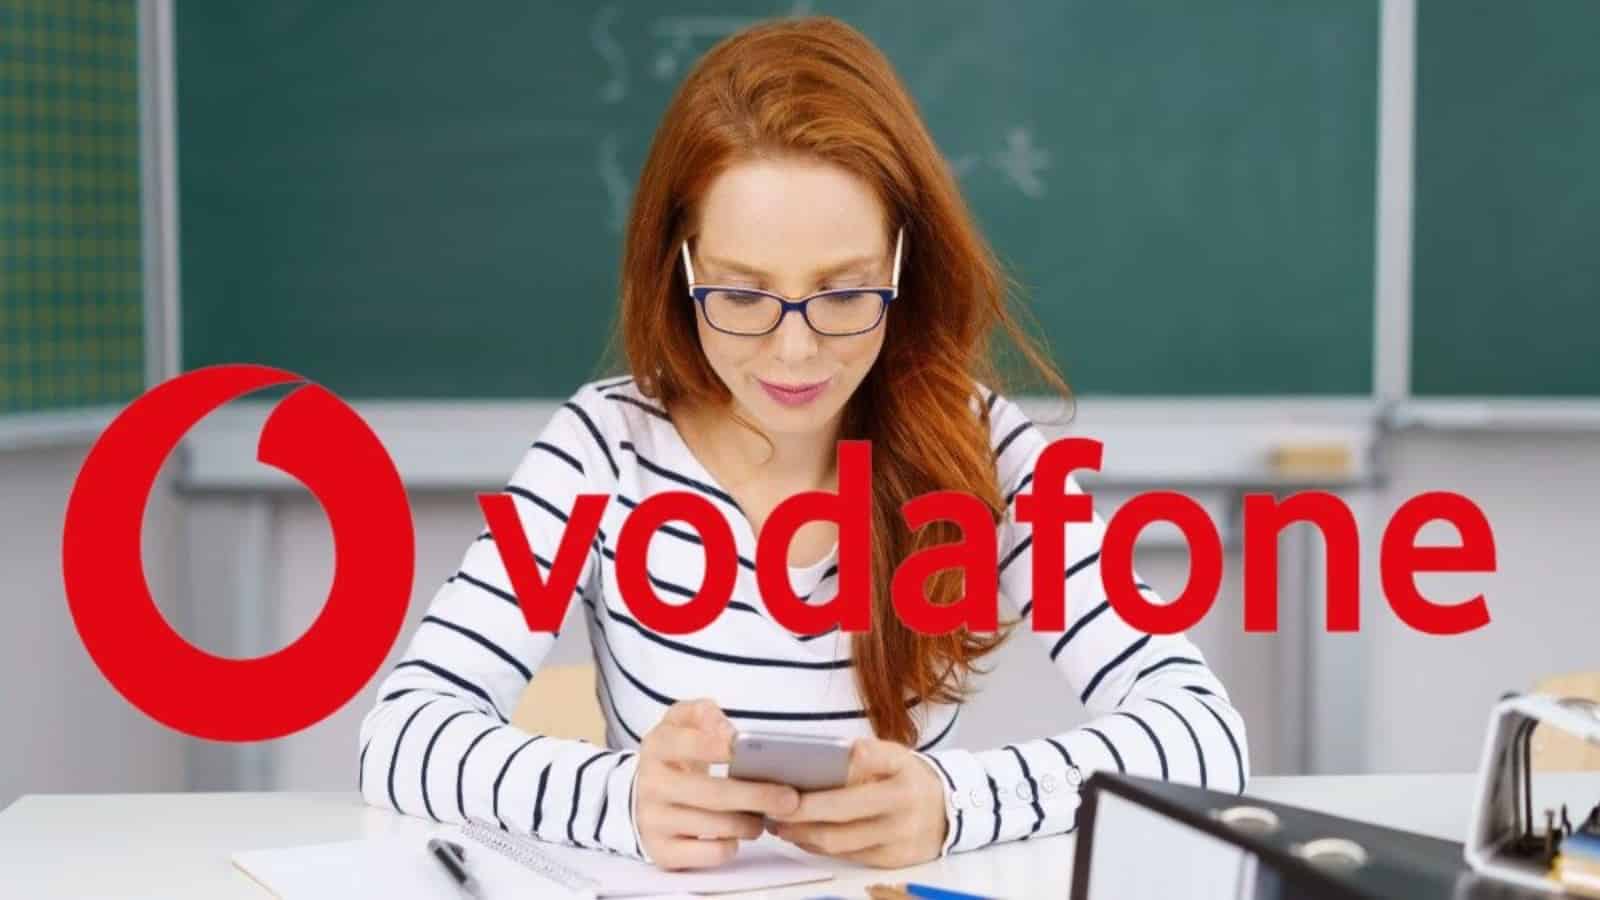 Vodafone, ecco le SILVER con un regalo: si arriva a 200 GB con 5€